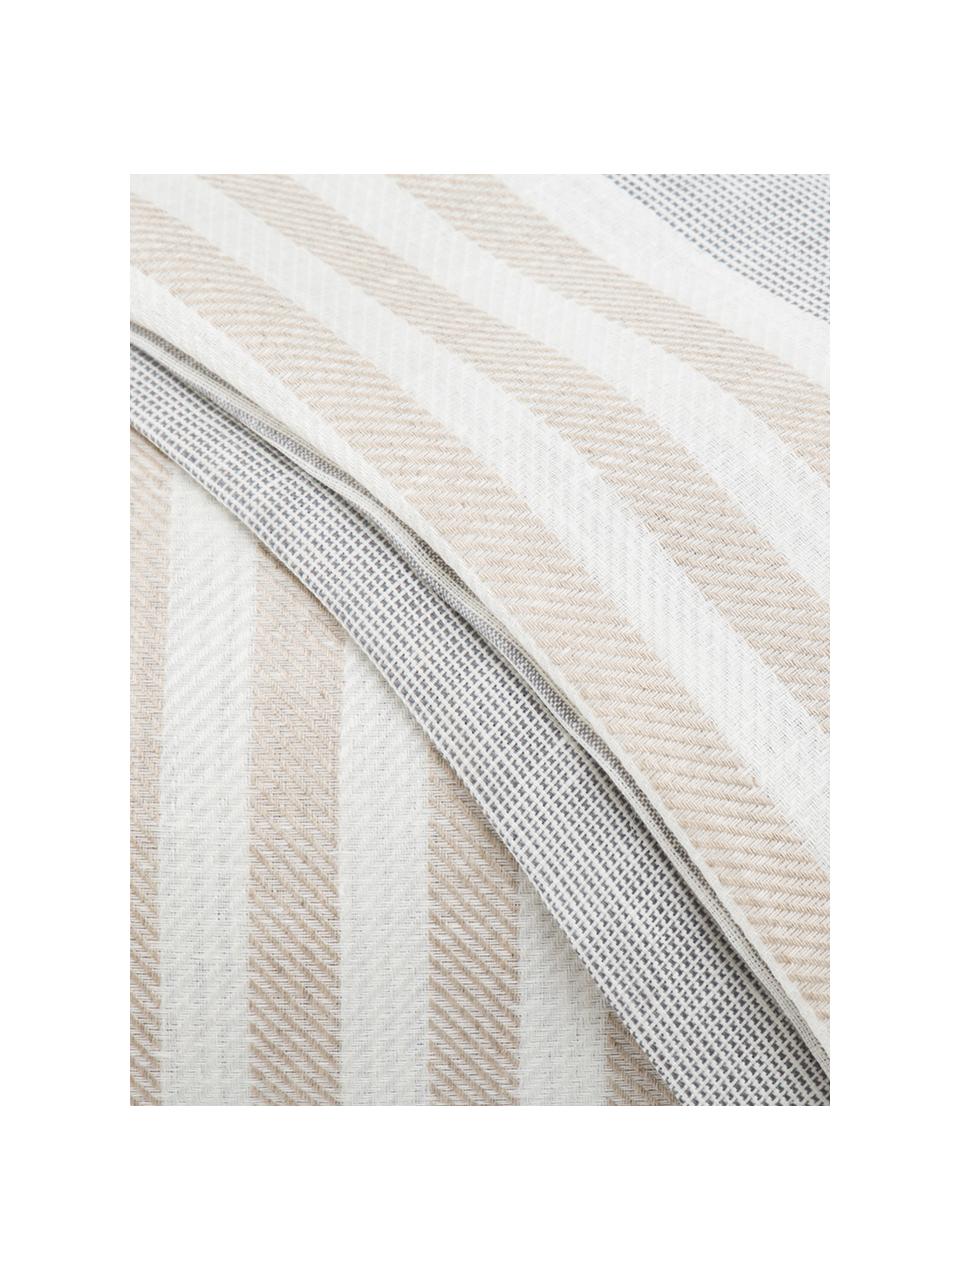 Parure copripiumino in lino Unico, Grigio, beige, crema, 250 x 260 cm